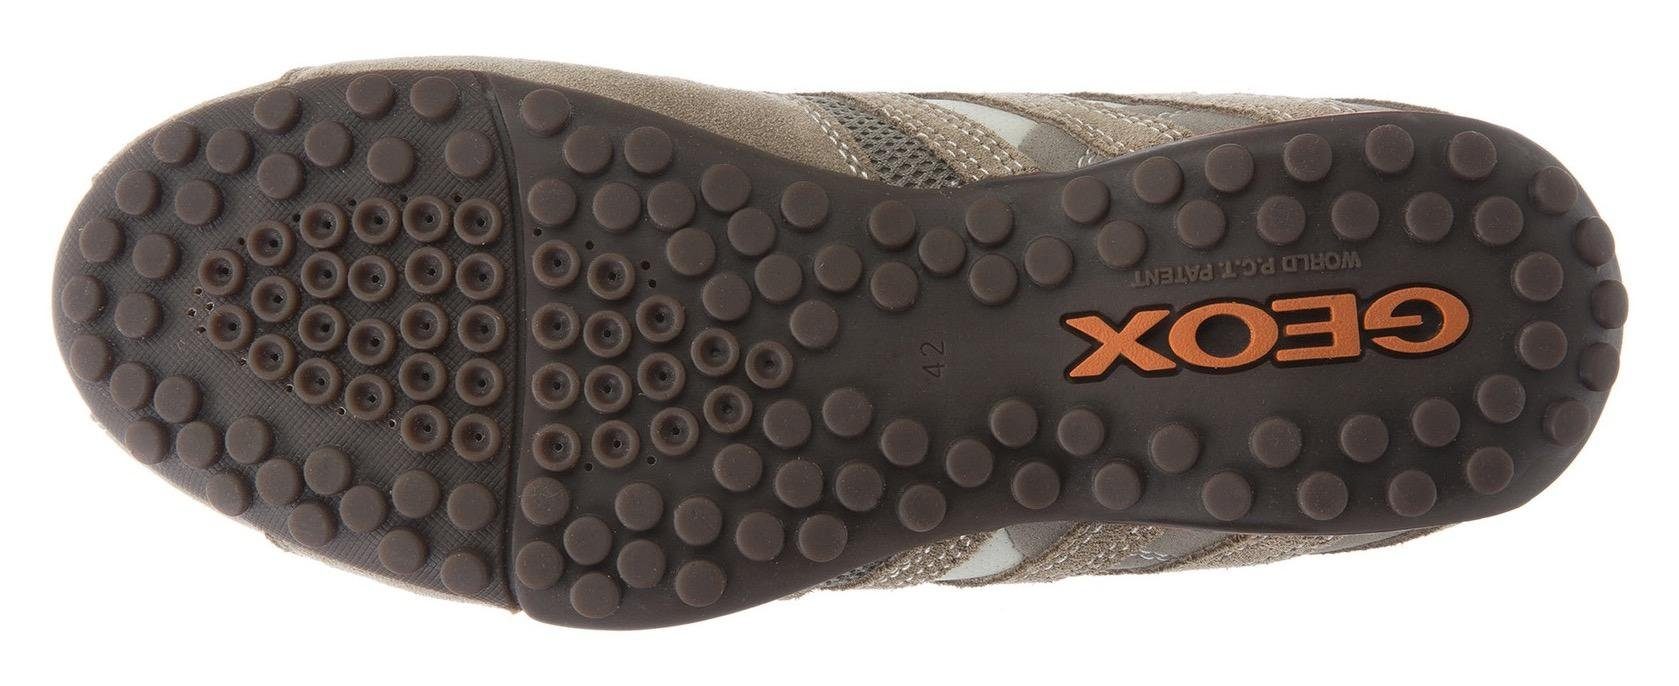 Membrane mit mit und Geox modischen beige-orange Sneaker Slip-On Spezial UOMO SNAKE Ziernähten Geox